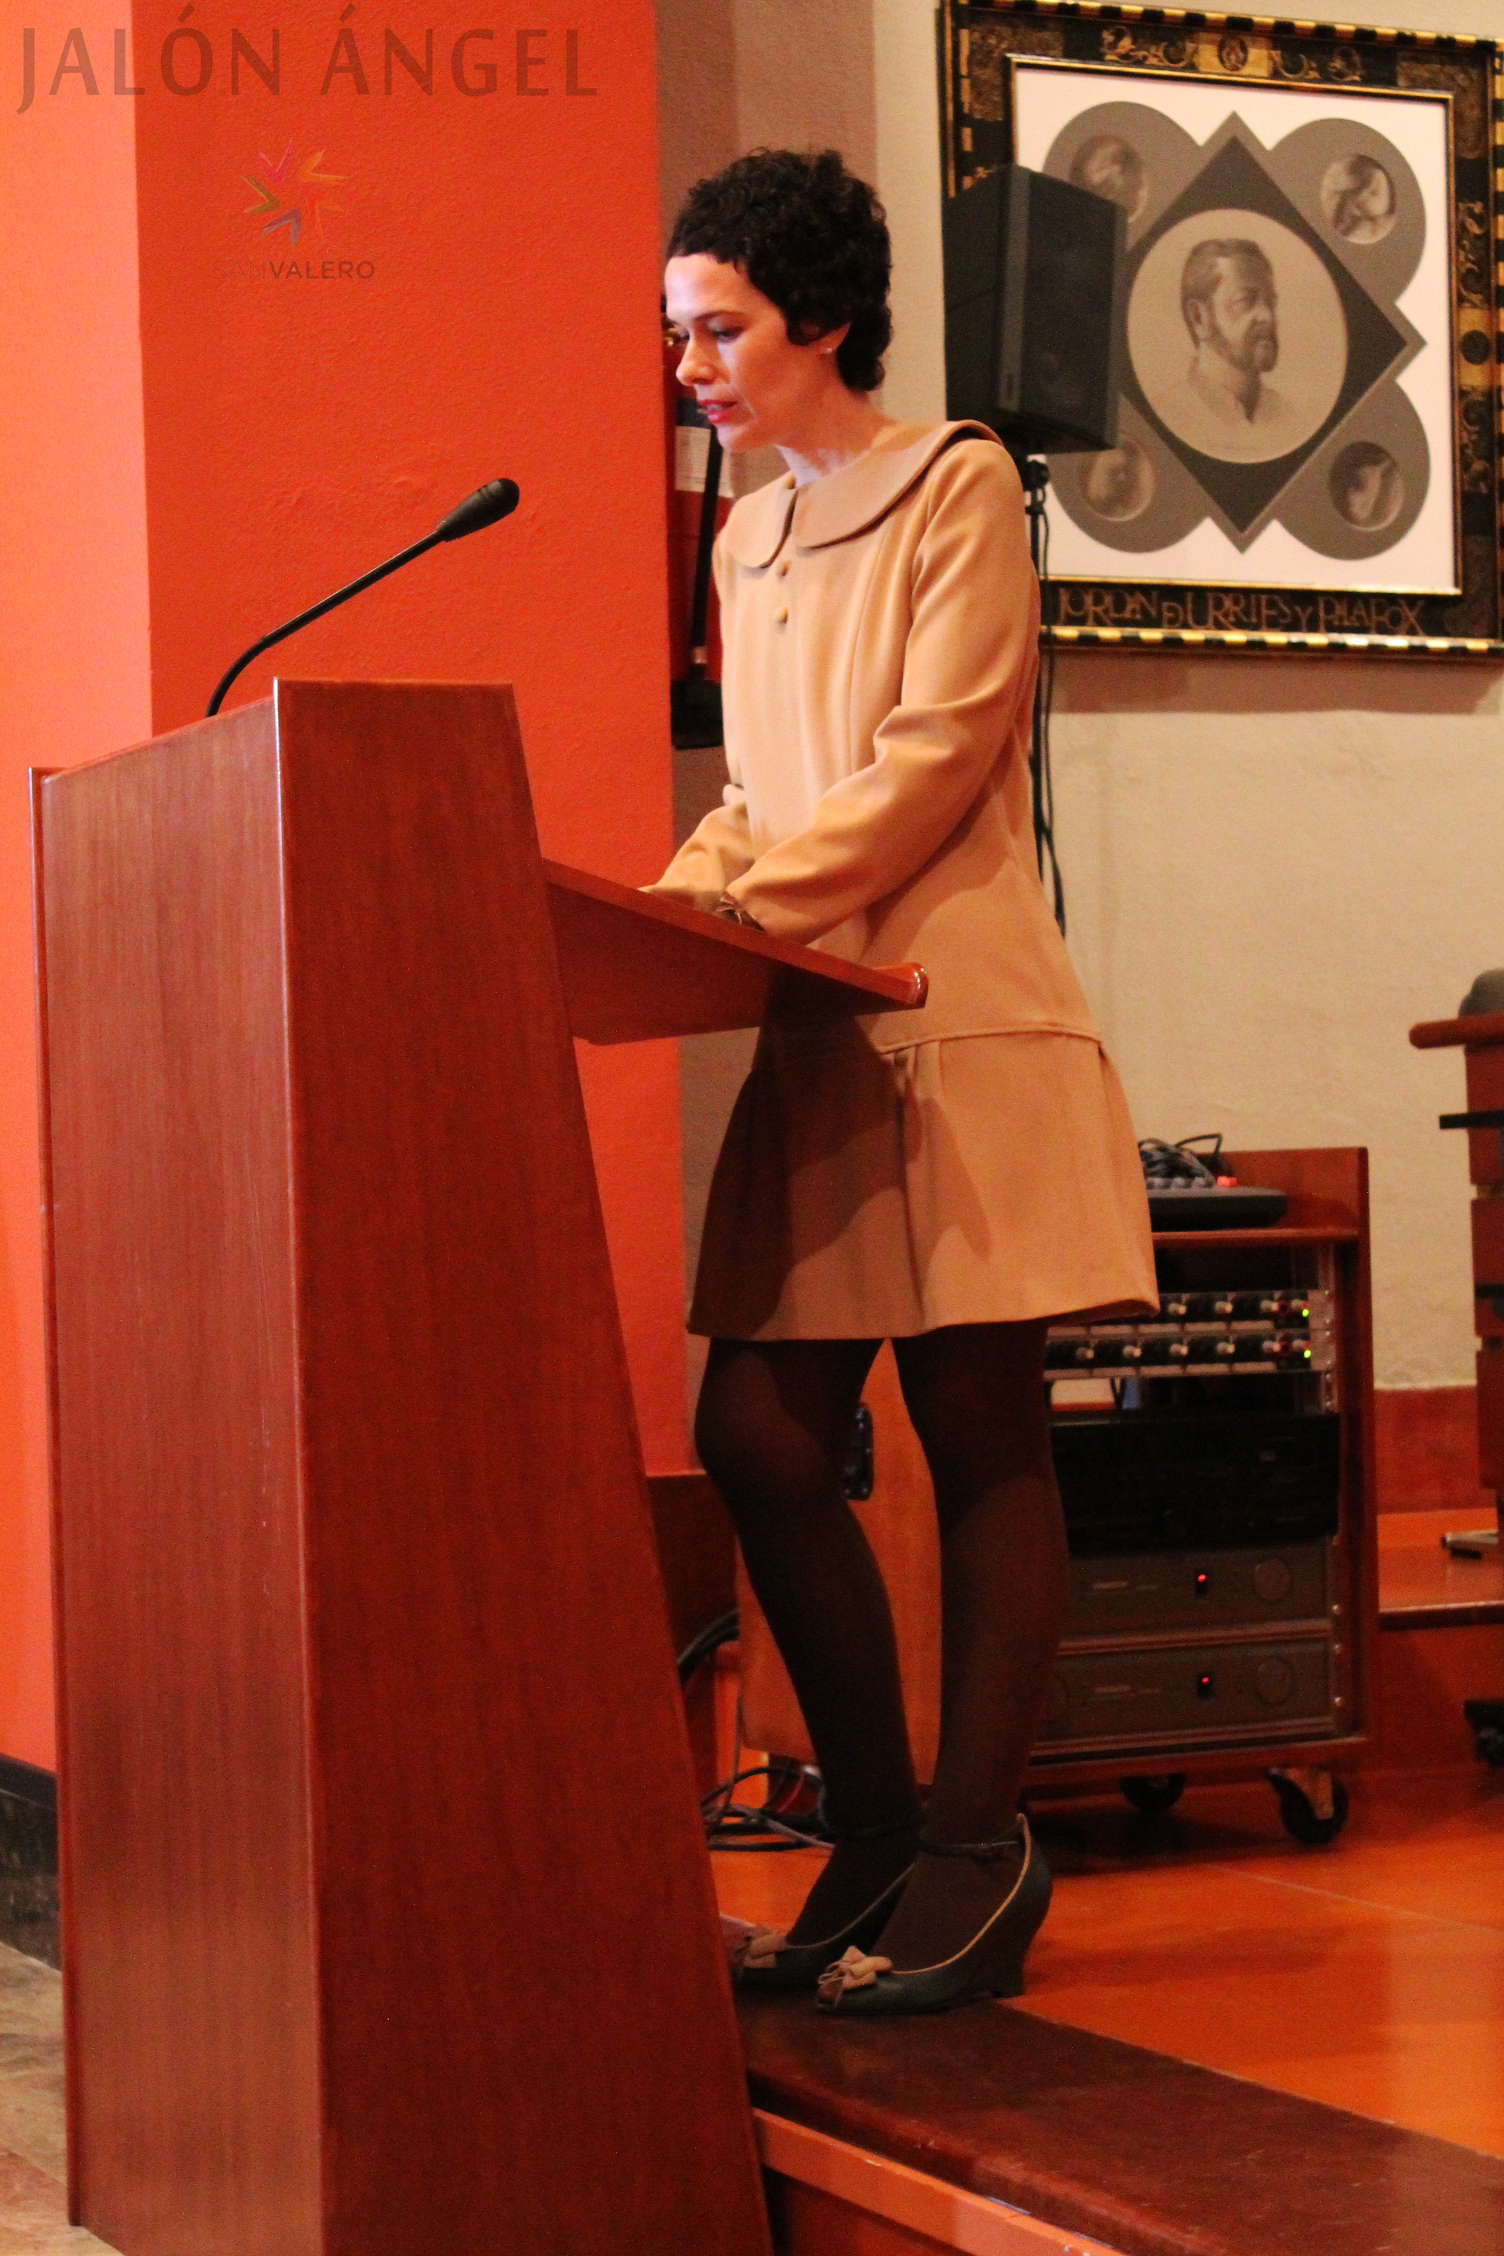 La directora del Archivo Fotográfico Jalón Ángel, Pilar Irala, ofreciendo su discurso en el acto de inauguración.